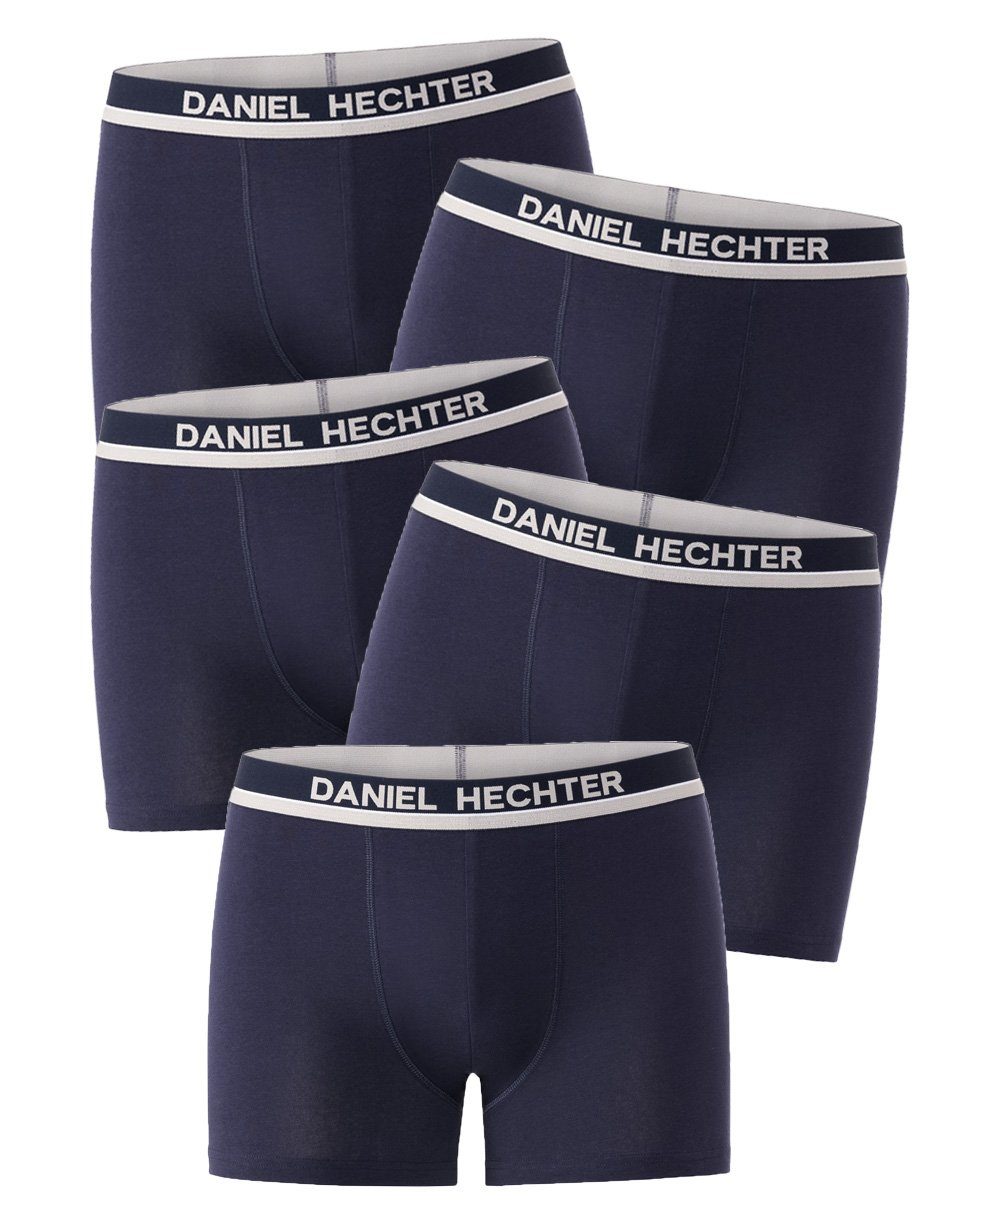 Daniel Hechter Boxershorts (Vorteilspack, 5-St., 5er-Pack) atmungsaktiv, hautfreundlich und optimale Passform durch elastischen Komfortbund marine